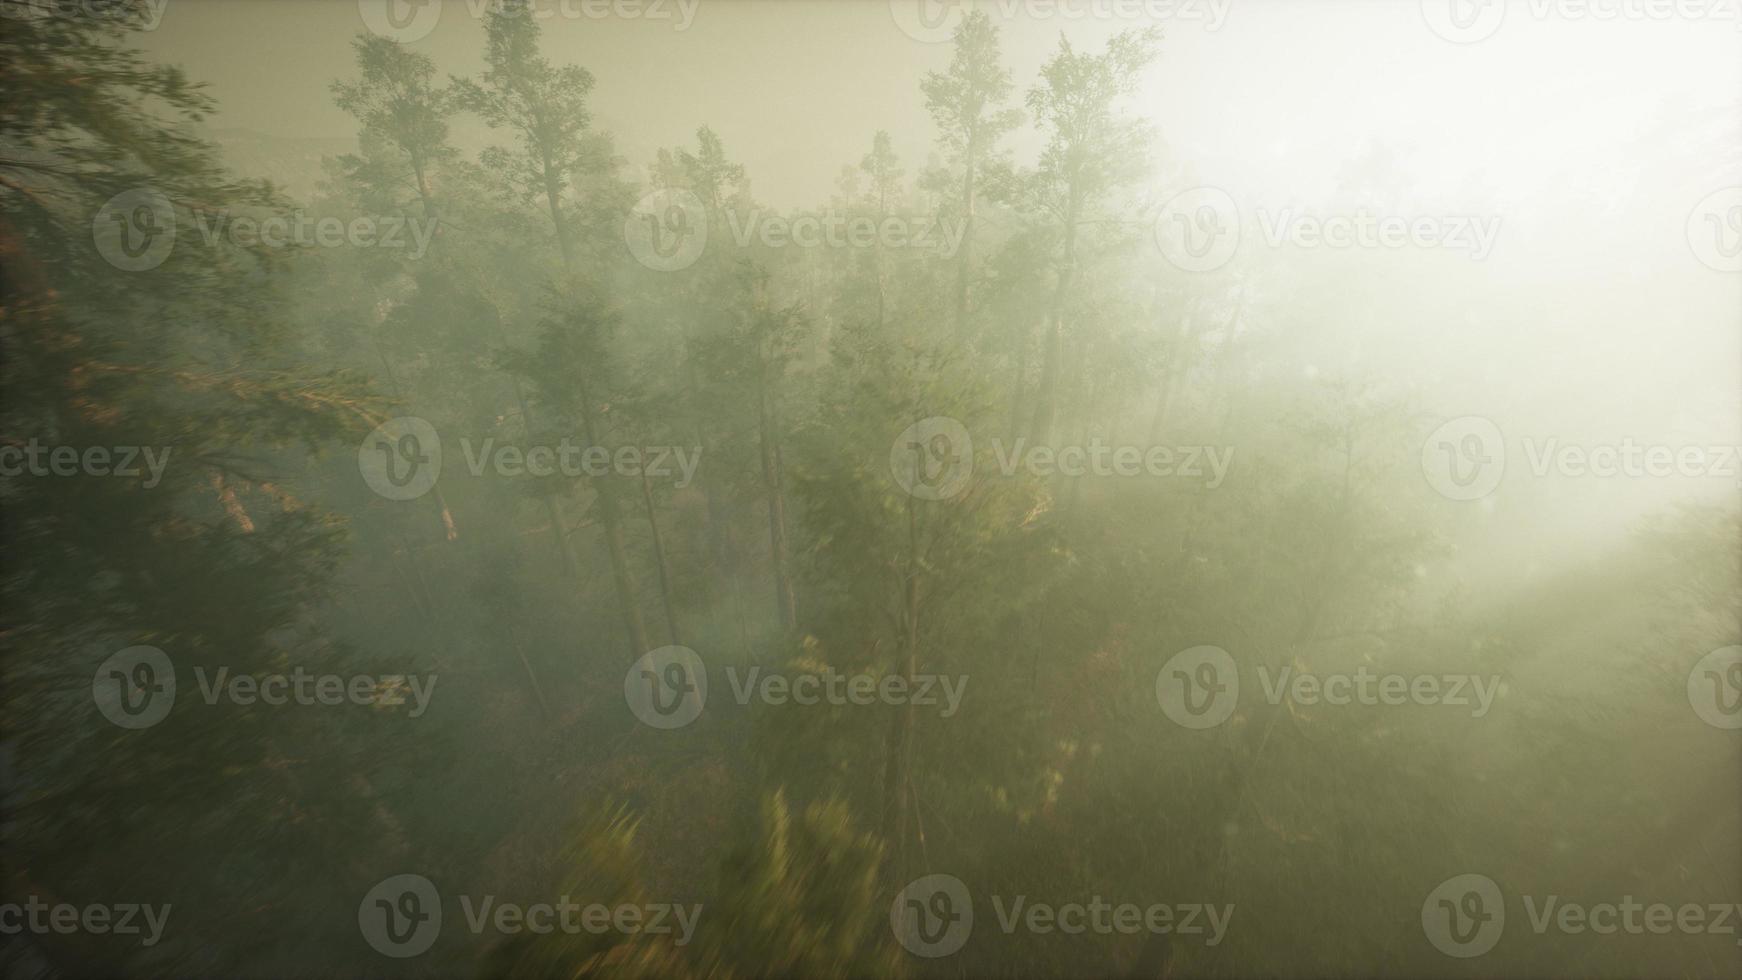 Drohne, die durch den Nebel bricht, um Rotholz und Kiefer zu zeigen foto